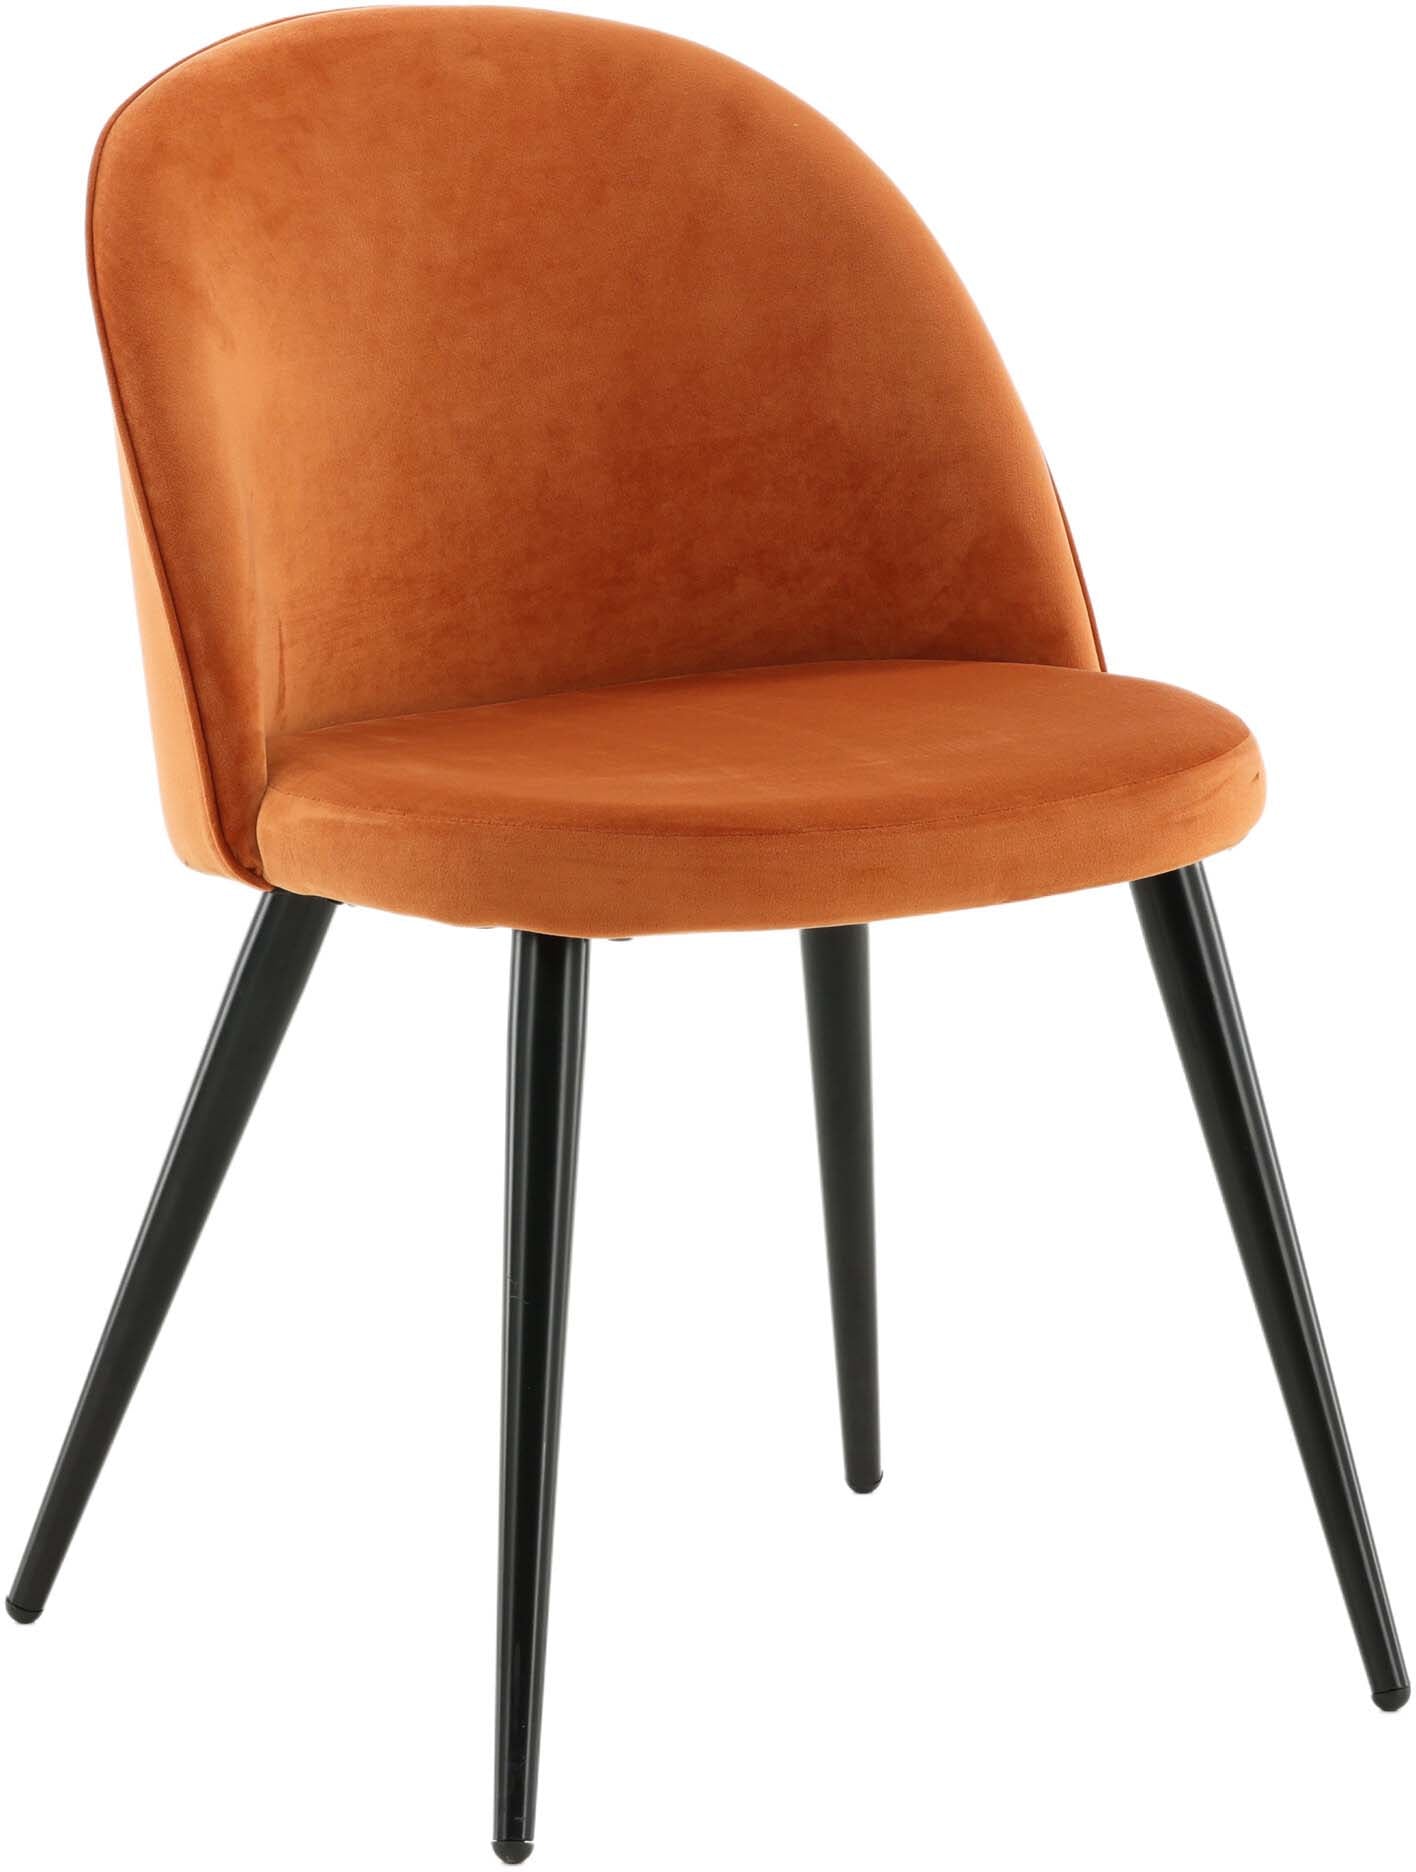 Velvet Matstol Stuhl in Rostiges Orange / Schwarz präsentiert im Onlineshop von KAQTU Design AG. Schalenstuhl ist von Venture Home